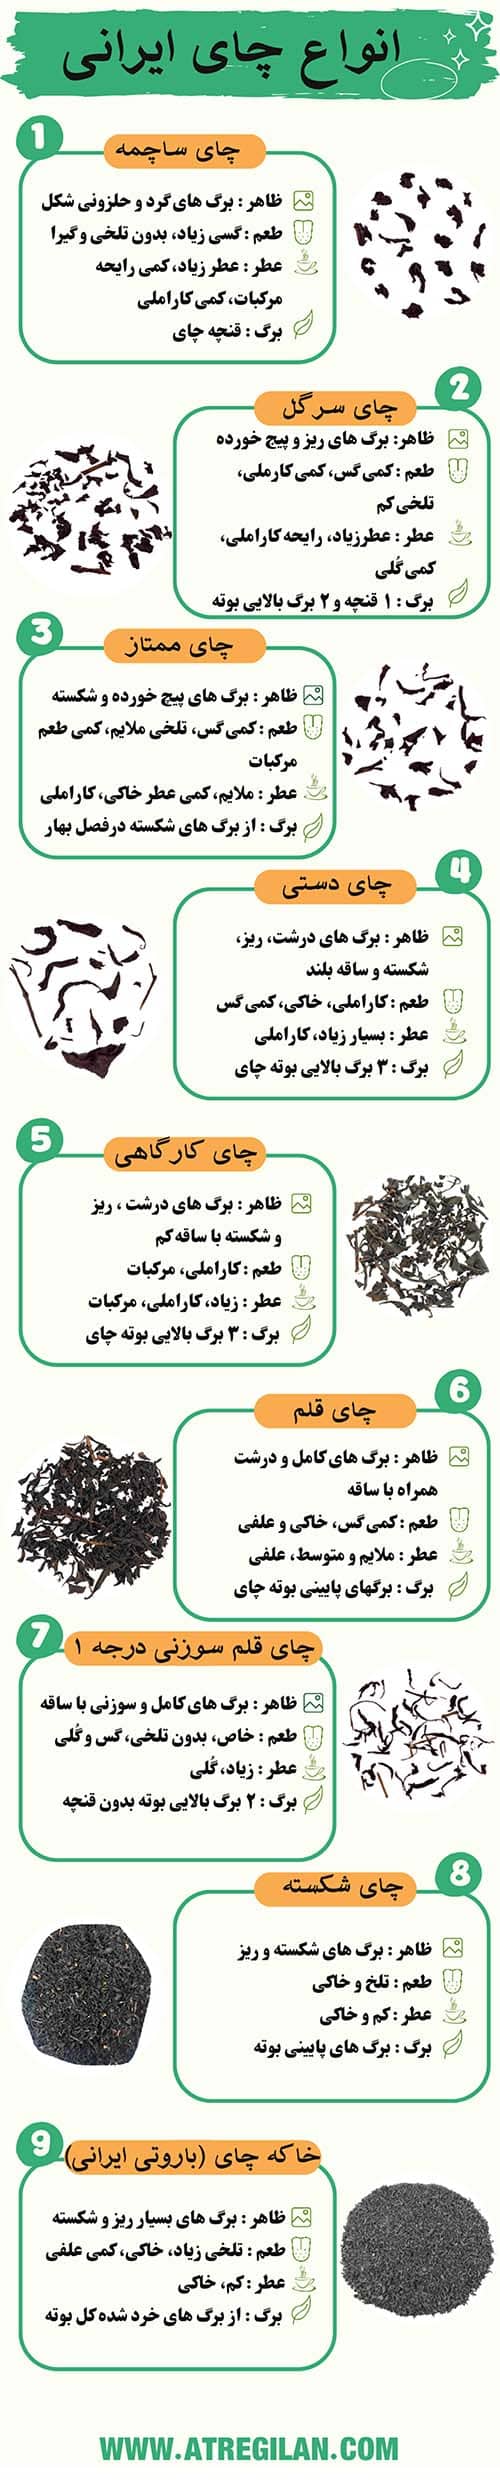 اینفوگرافی انواع چای ایرانی لاهیجان